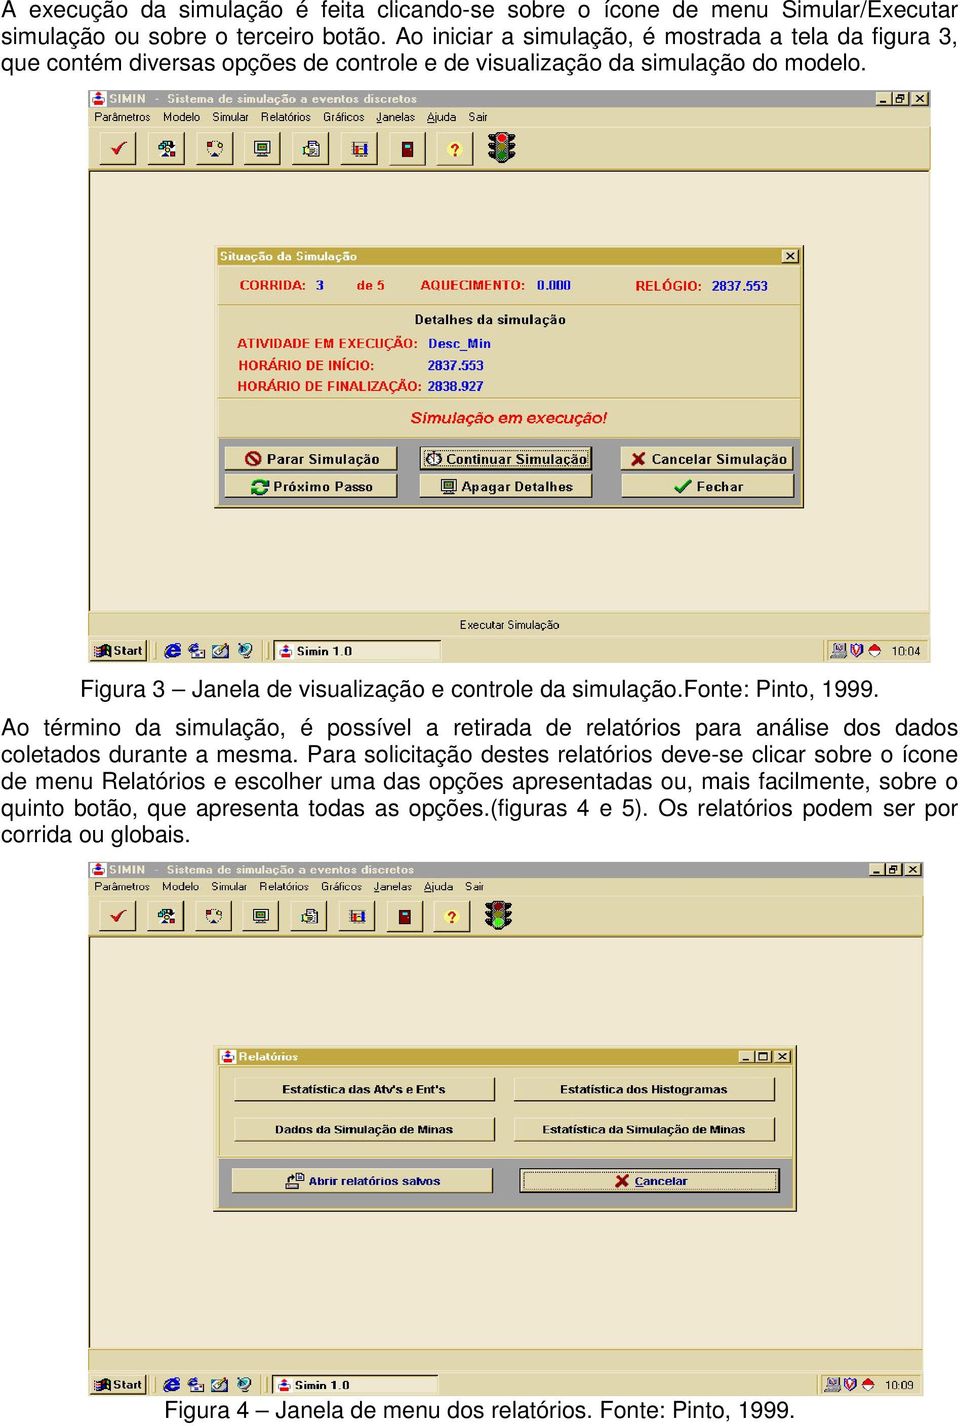 Figura 3 Janela de visualização e controle da simulação.fonte: Pinto, 1999. Ao término da simulação, é possível a retirada de relatórios para análise dos dados coletados durante a mesma.